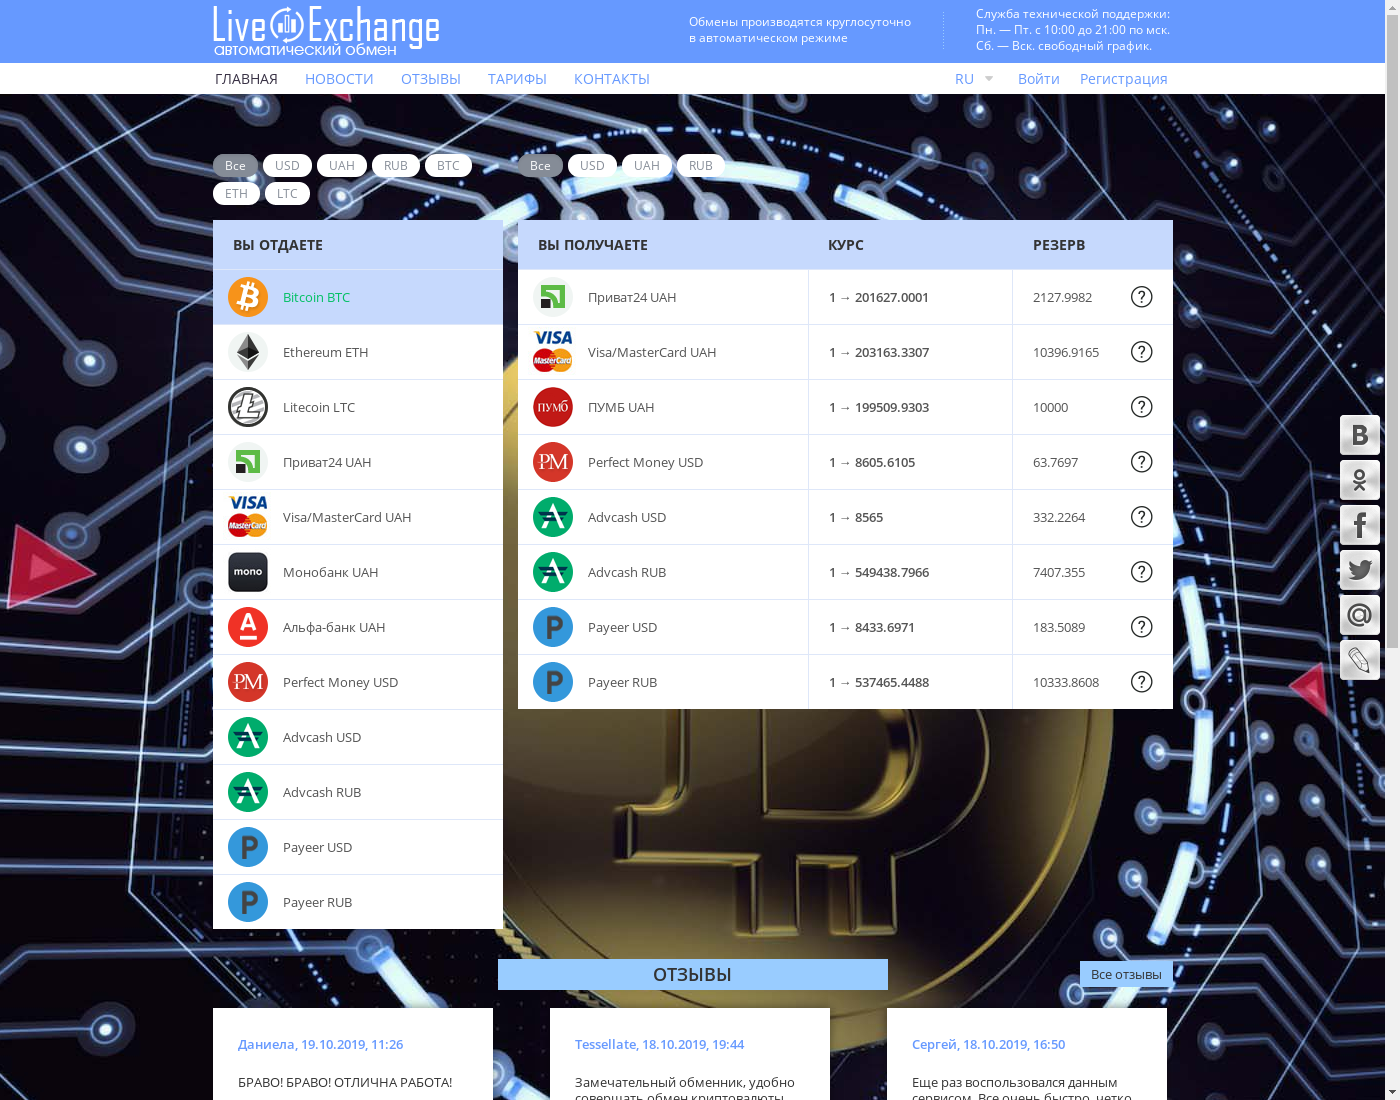 LivEx интерфейс пользователя: домашняя страничка на языке — Русский